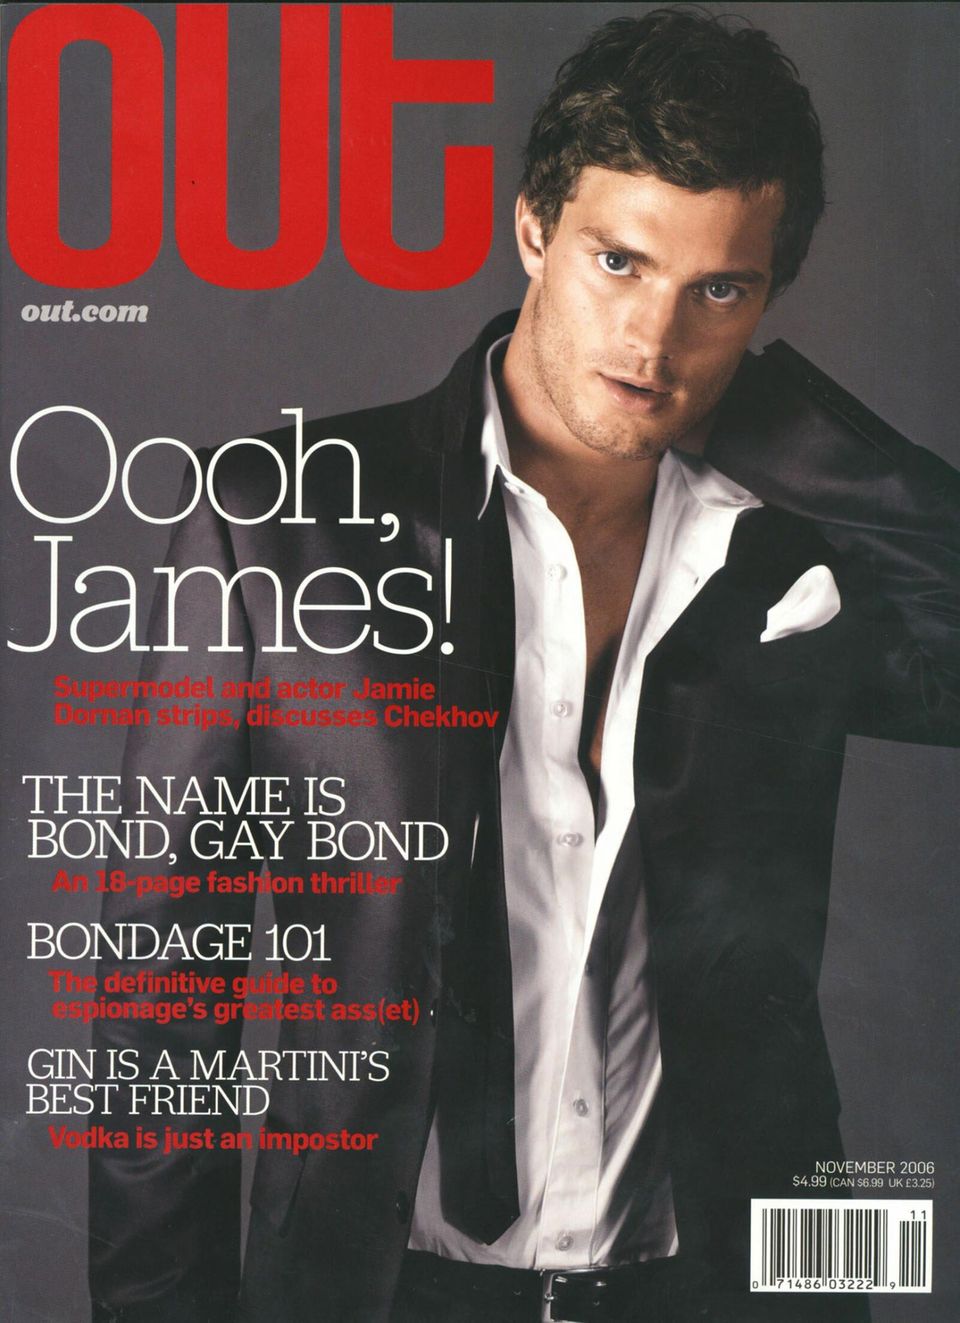 2006 schon mal Coverboy - damals verkündete Jamie Dornan im Schwulenmagazin "Out", dass er dringend wieder eine Freundin brauche, er sei kein Typ für One-Night-Stands. Das war nach seiner Trennung von Keira Knightley.